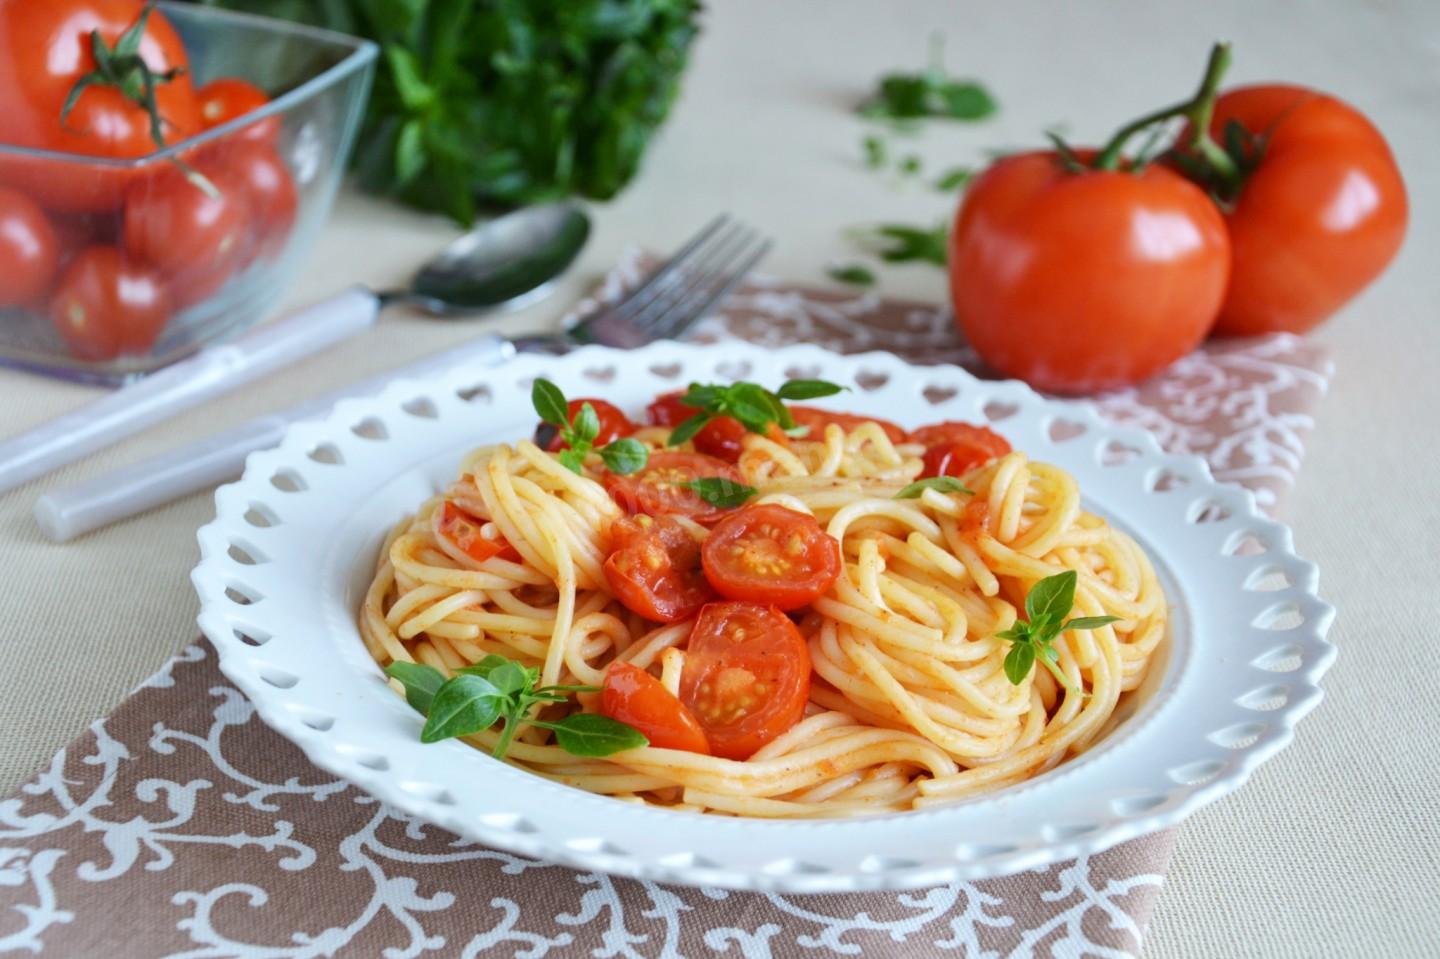 Например макароны. Итальянская паста с помидорами и базиликом. Паста Арабьята с помидорами черри. Спагетти с помидорами. Макароны с томатом.